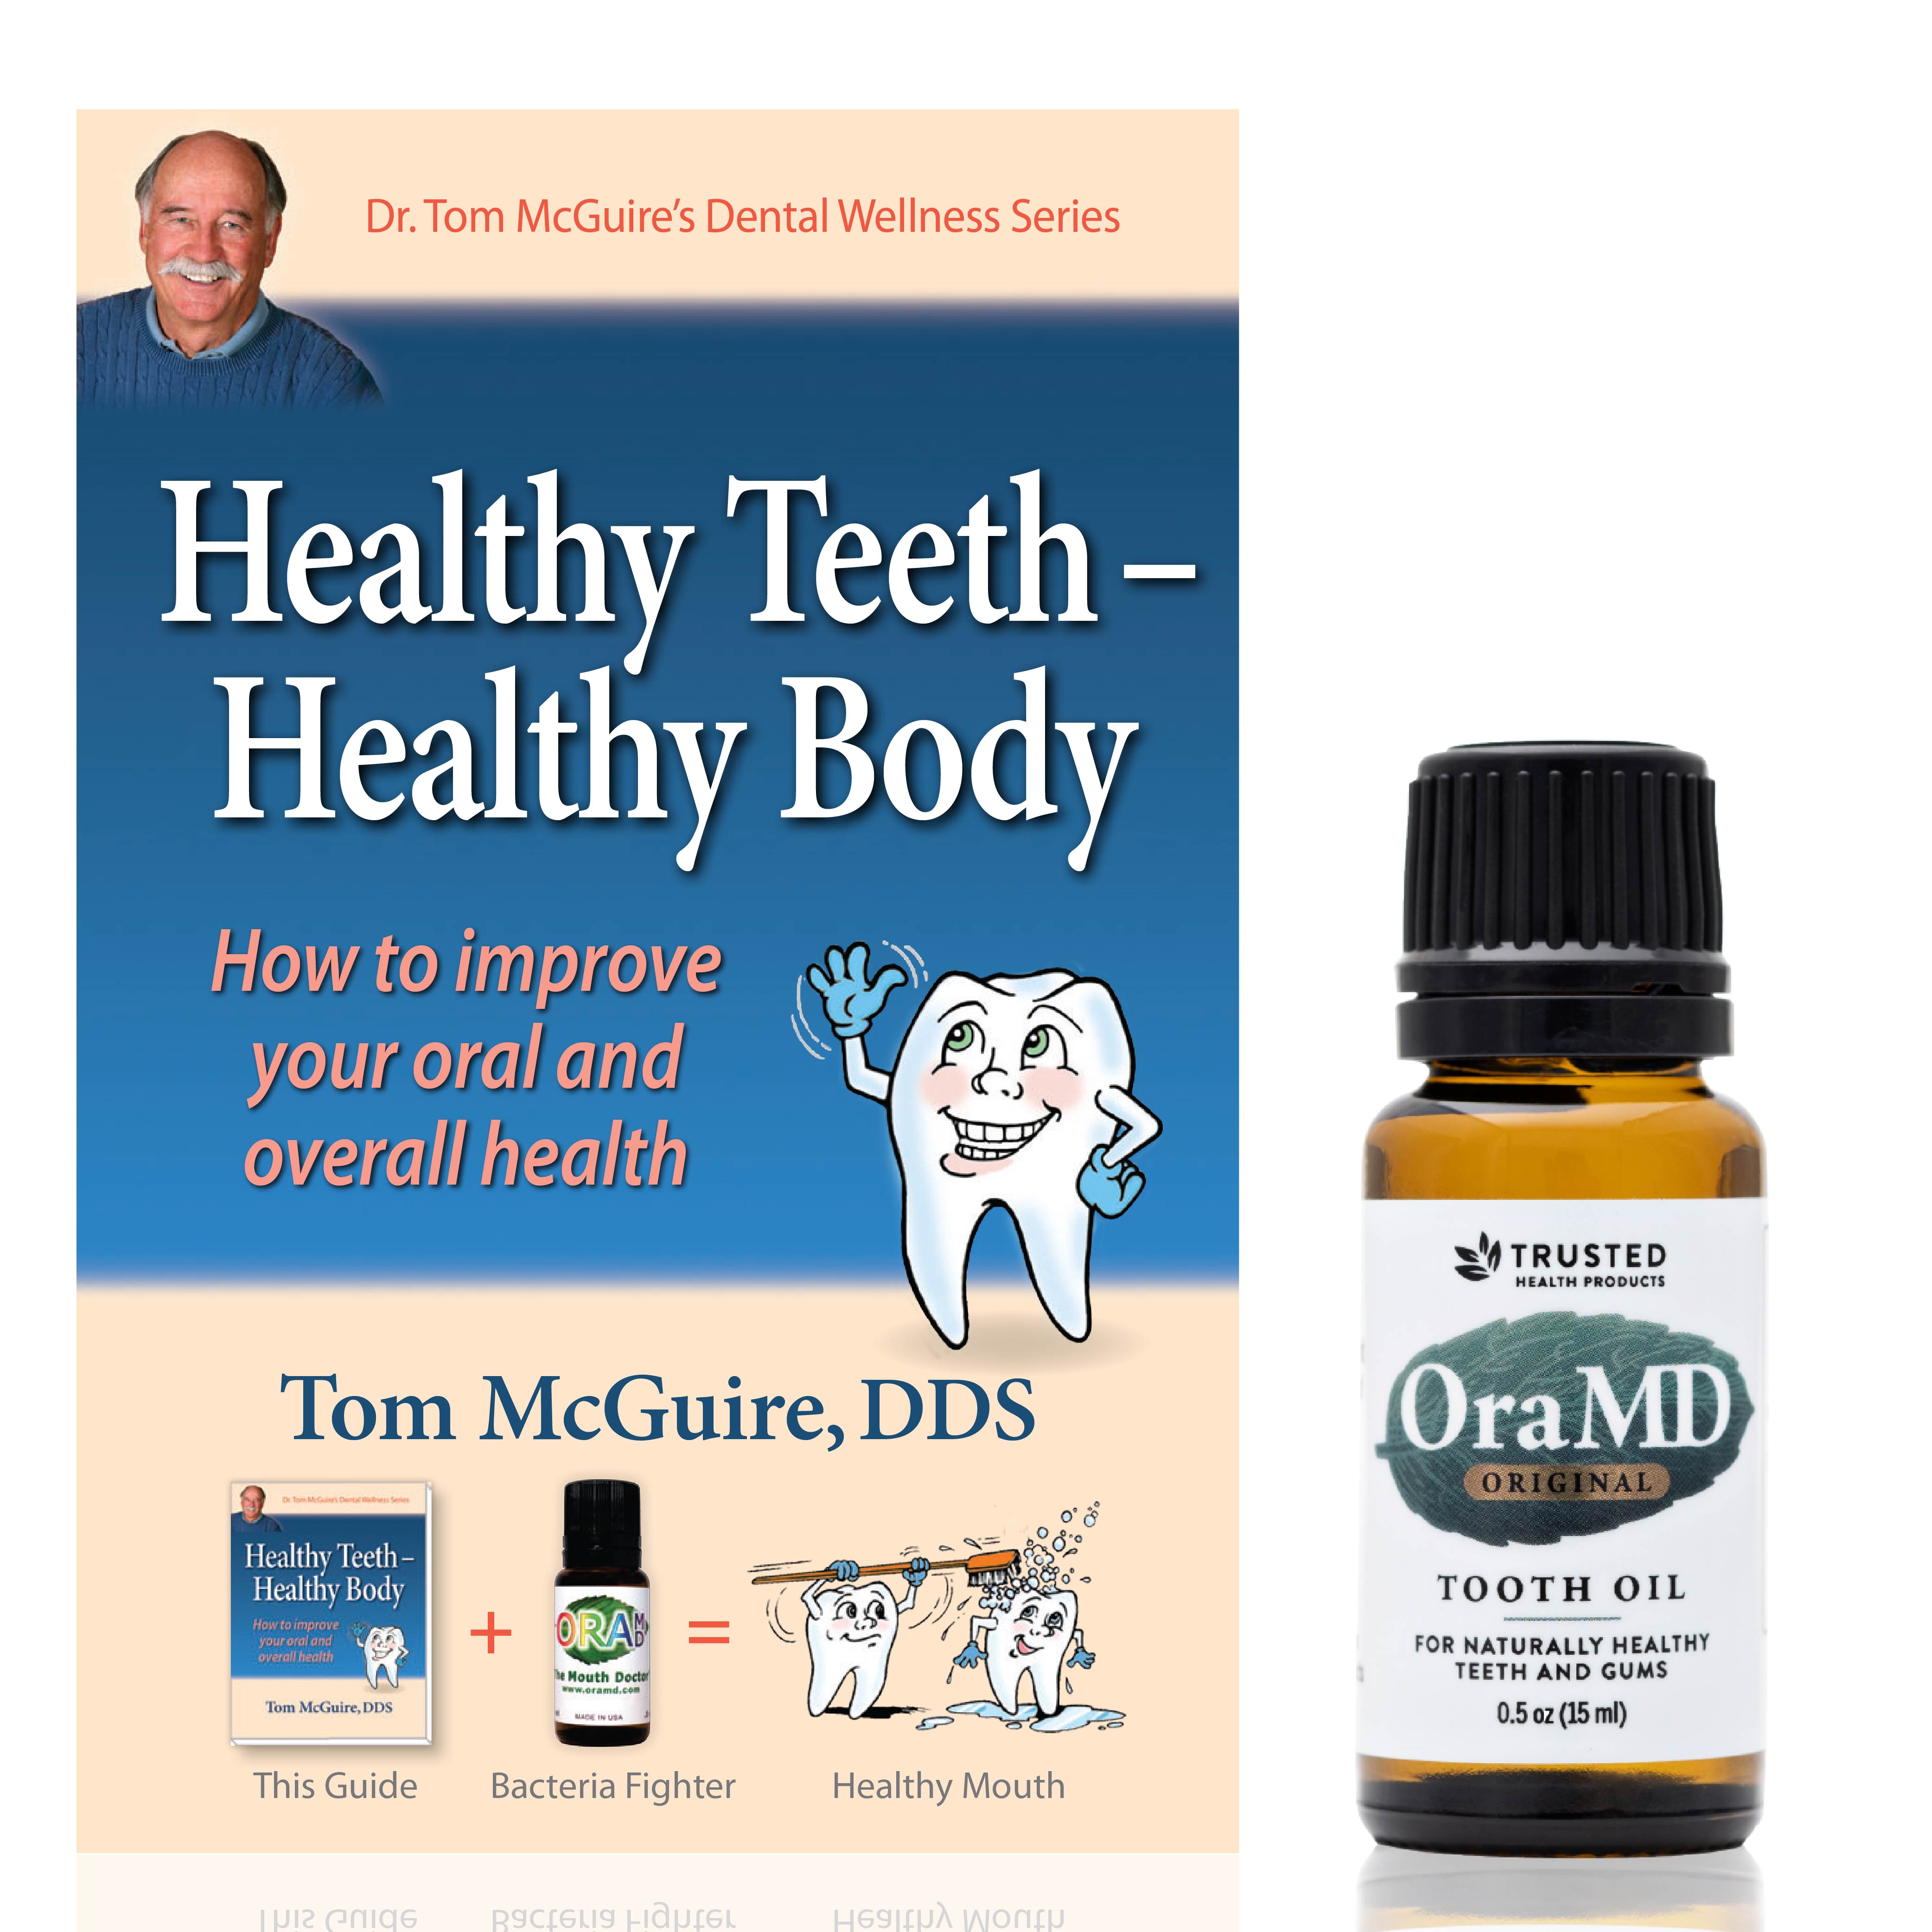 Dental product sample packs for proper oral hygiene